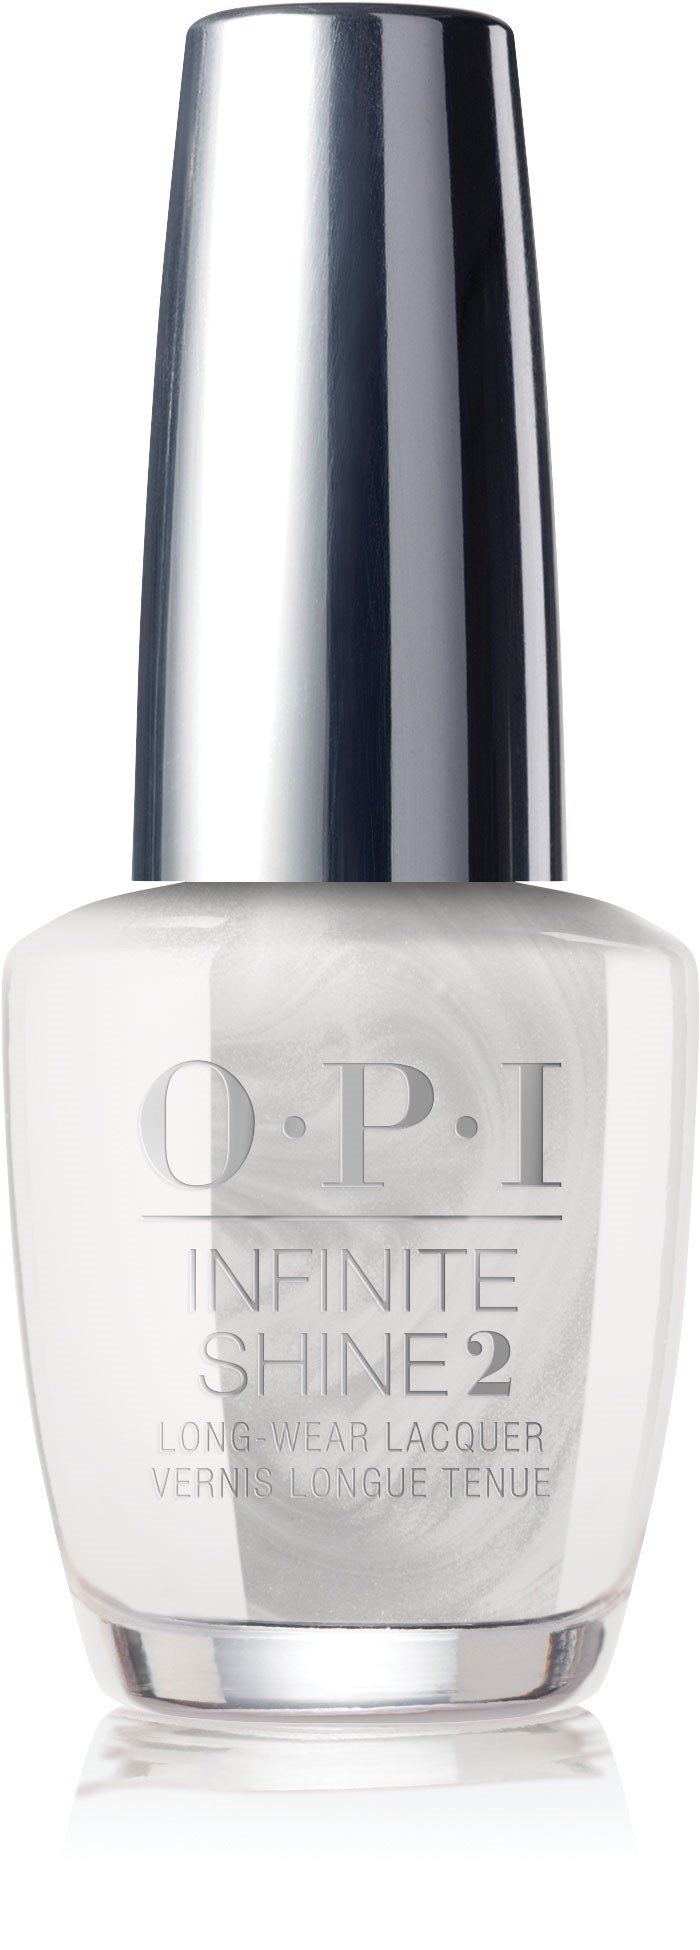 OPI Infinite Shine - Perla de Kioto